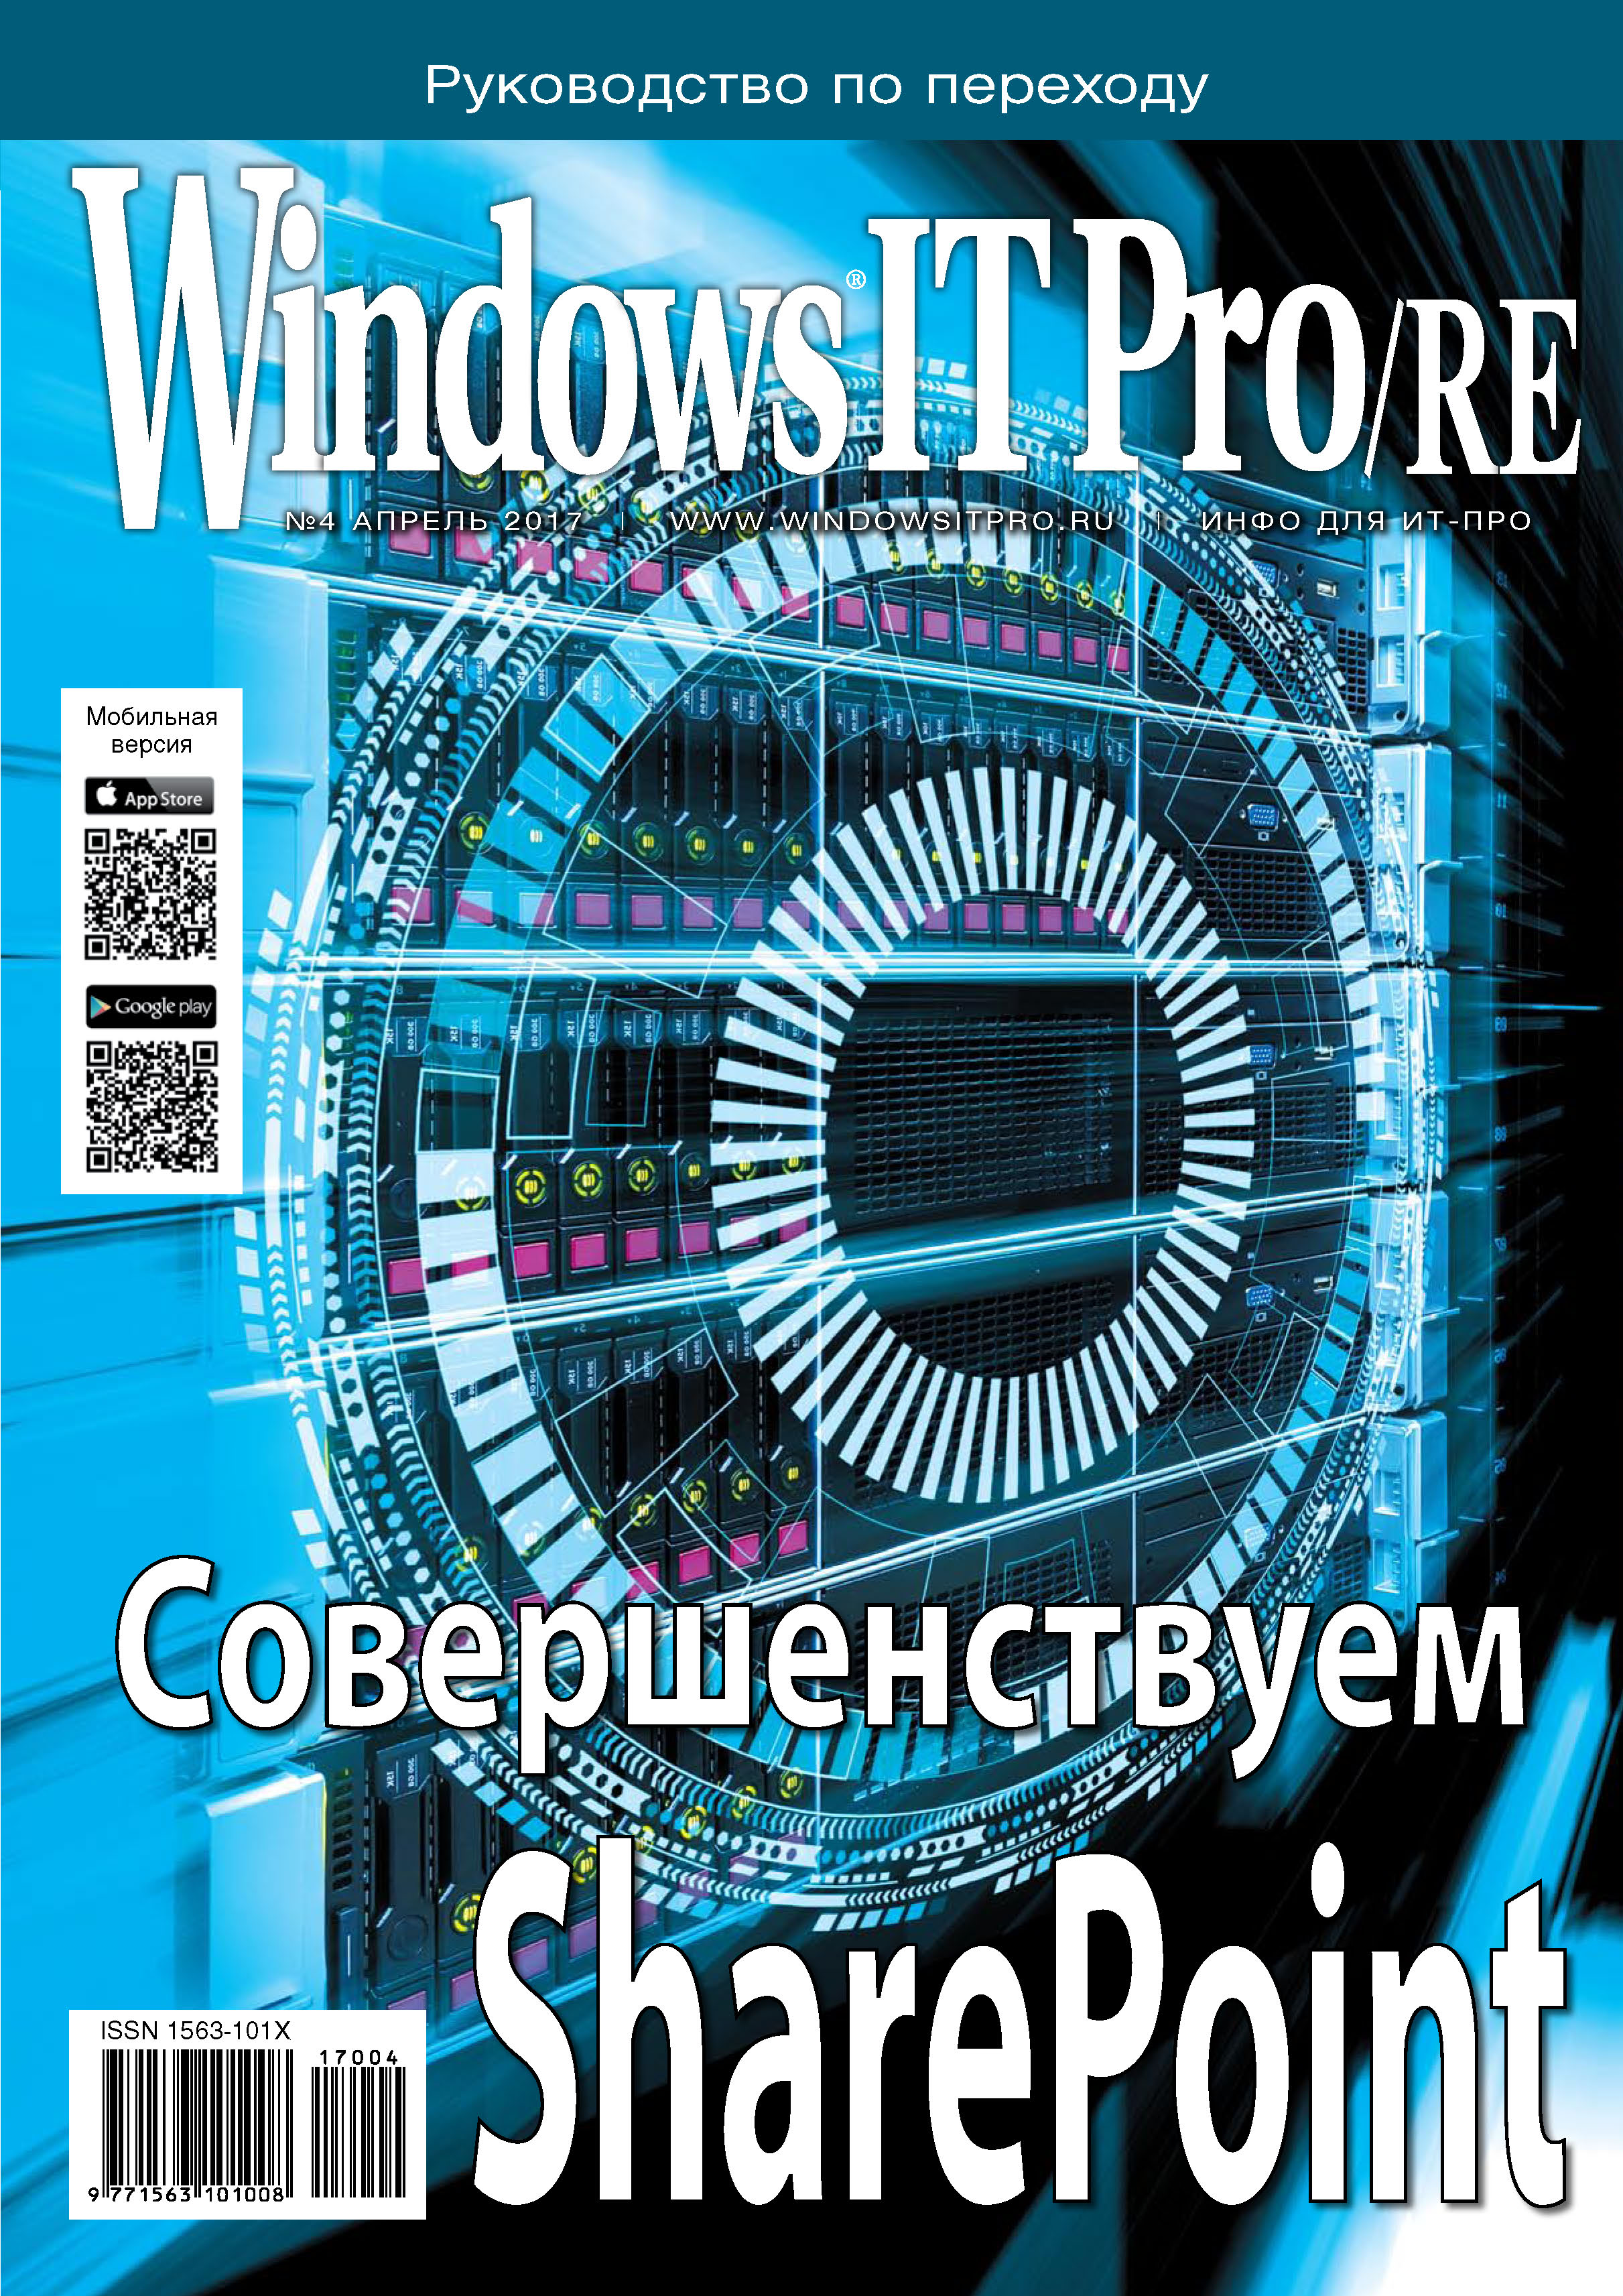 Книга Windows IT Pro 2017 Windows IT Pro/RE №04/2017 созданная Открытые системы может относится к жанру компьютерные журналы, ОС и сети, программы. Стоимость электронной книги Windows IT Pro/RE №04/2017 с идентификатором 23797261 составляет 484.00 руб.